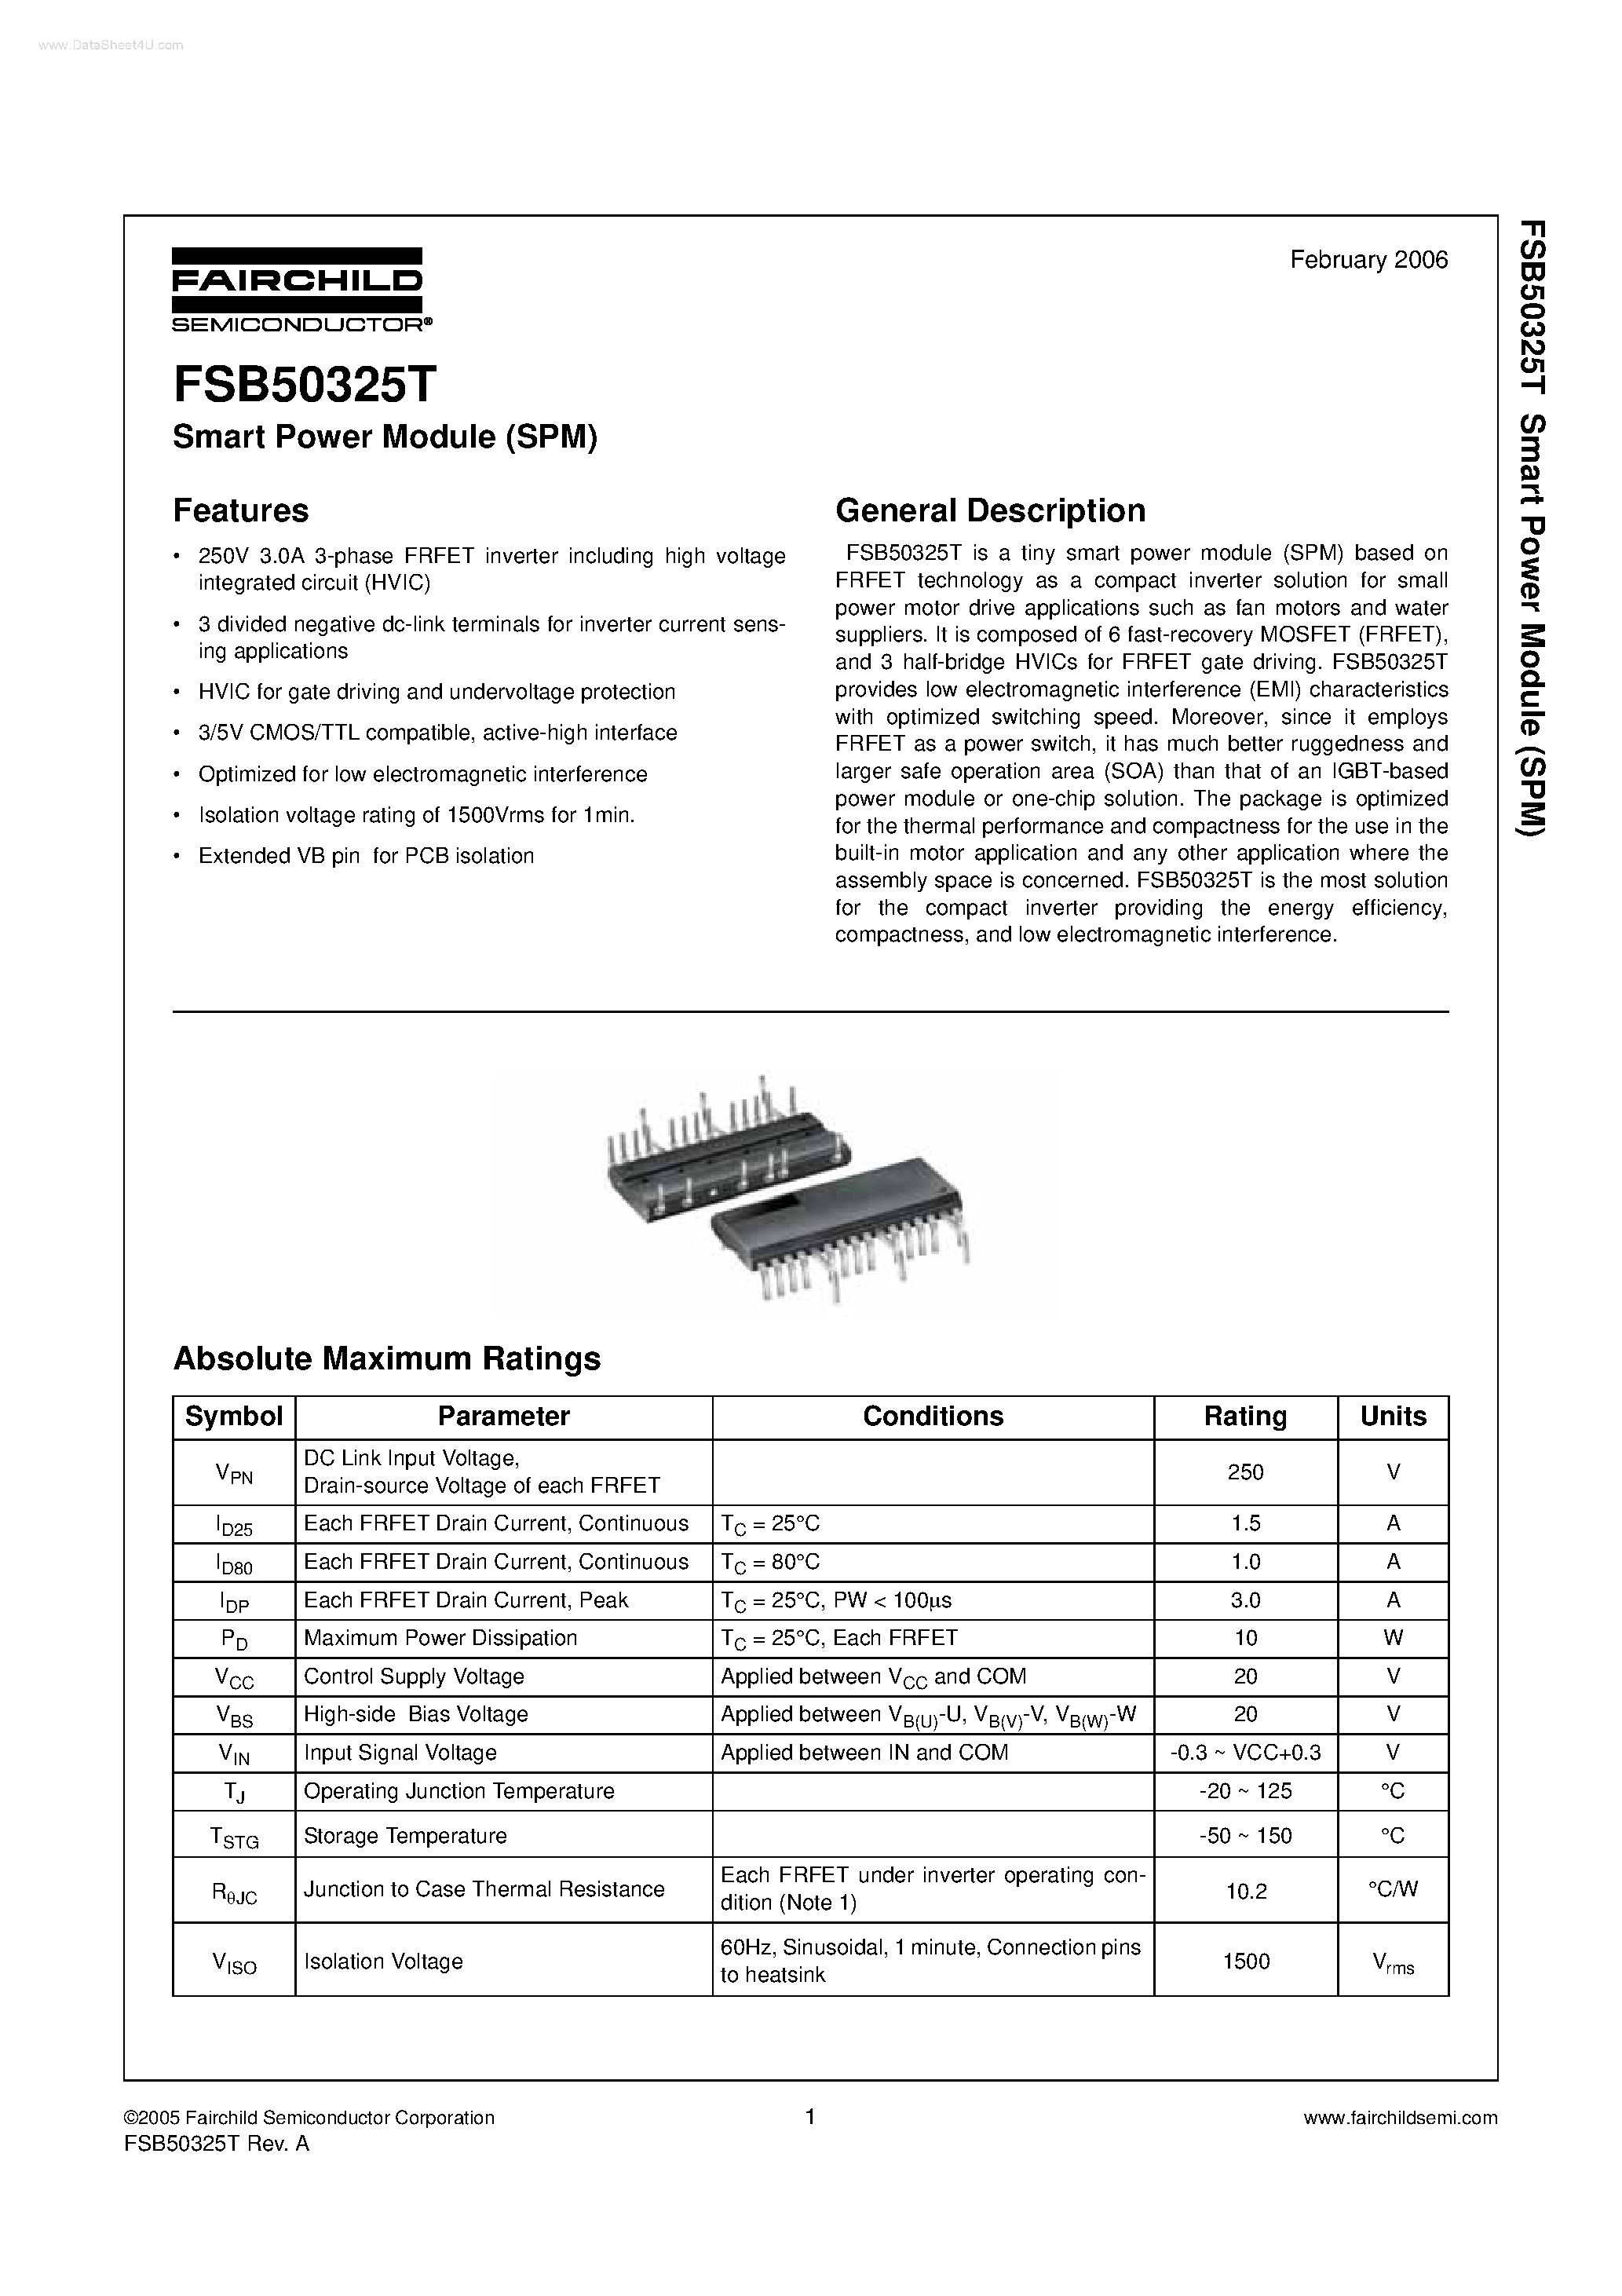 Даташит FSB50325T - Smart Power Module страница 1